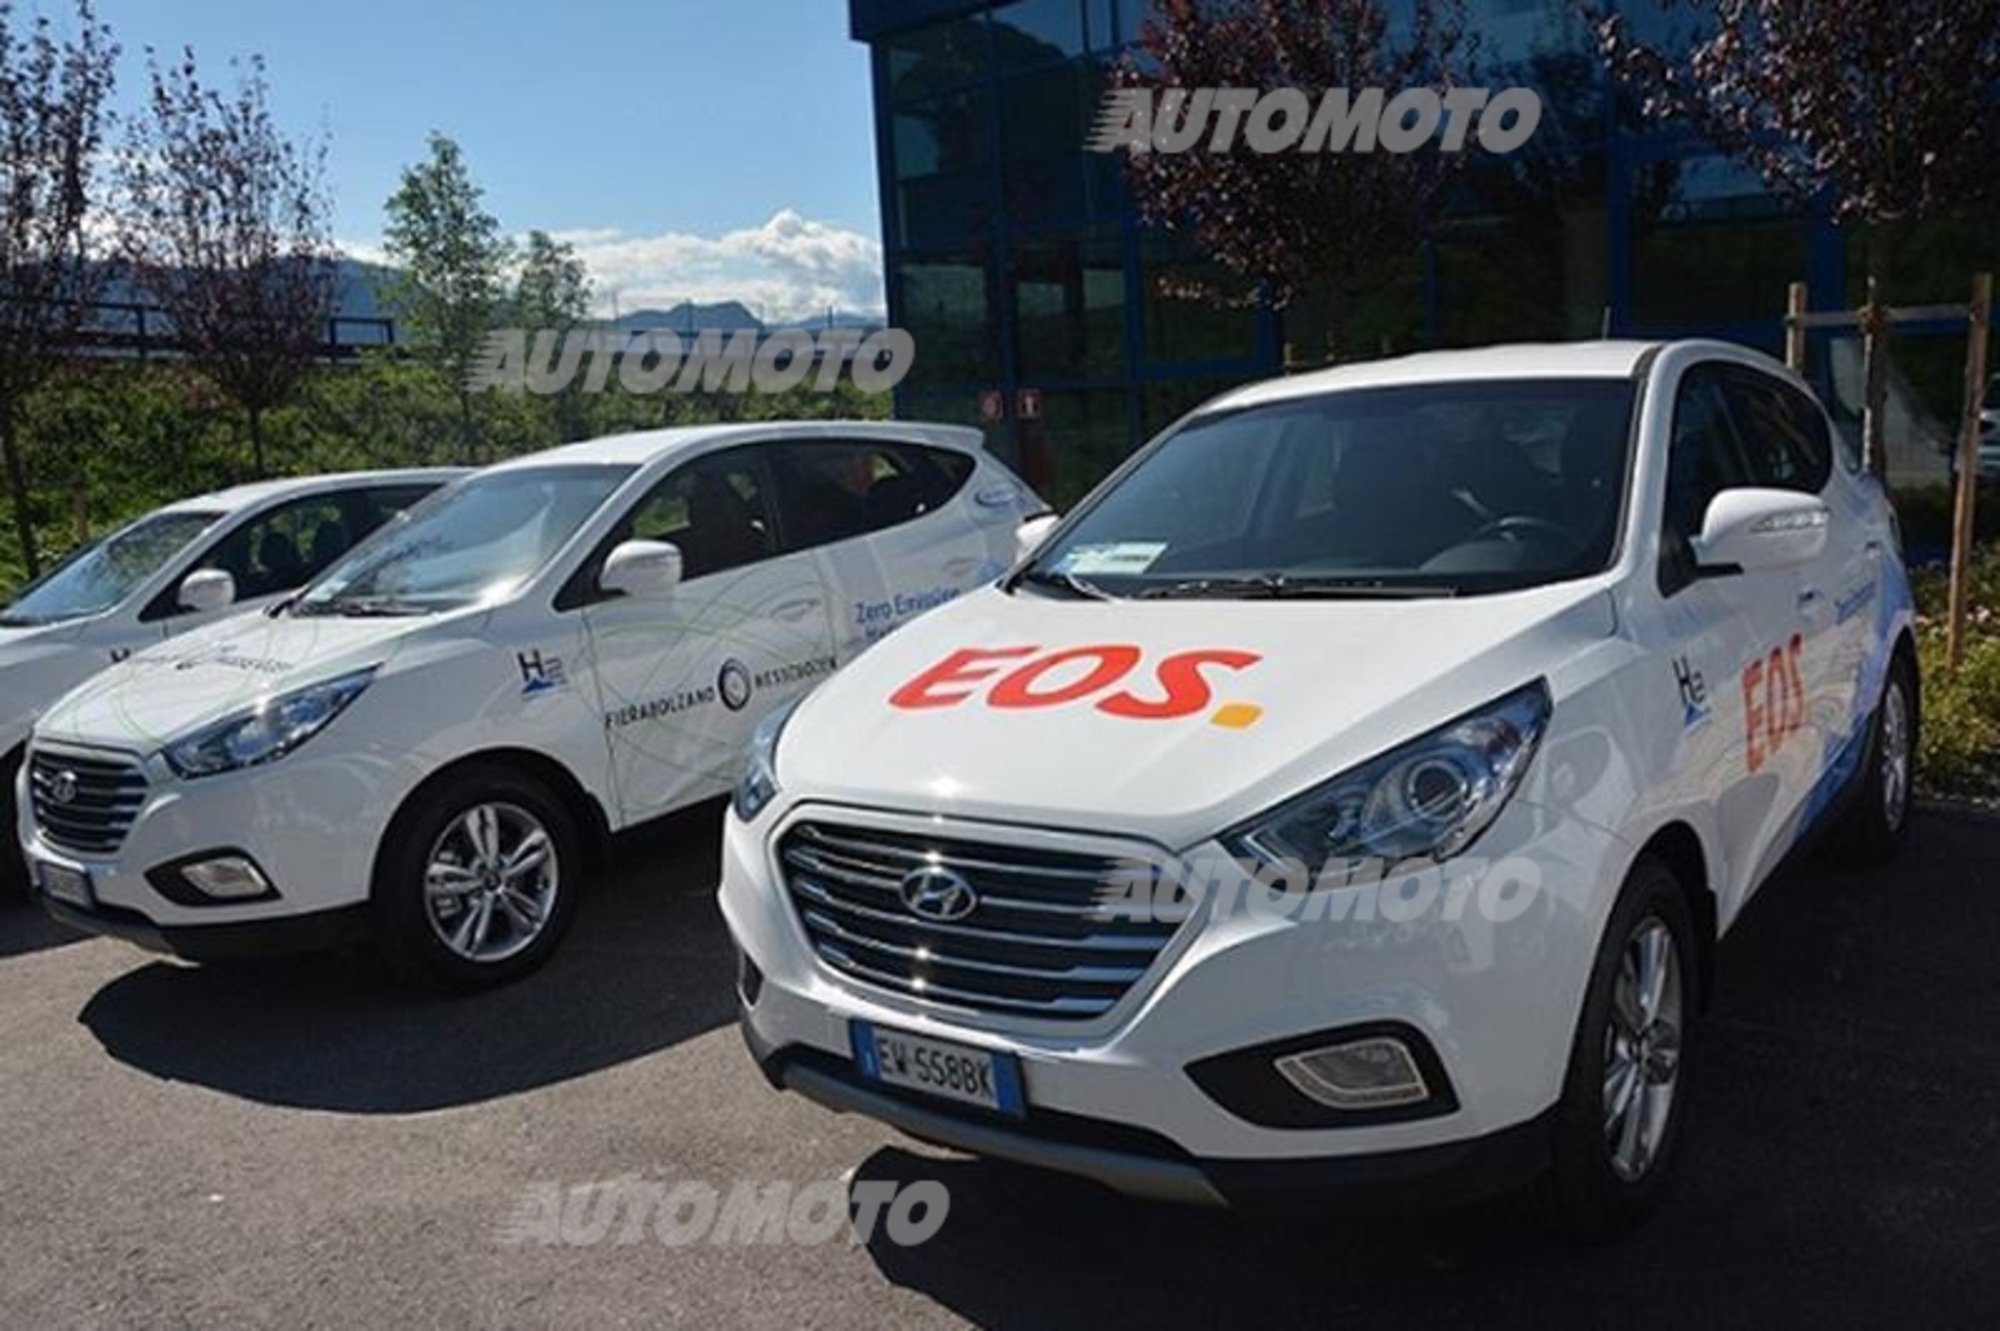 Hyundai ix35 a idrogeno: consegnati i primi 10 esemplari in Italia